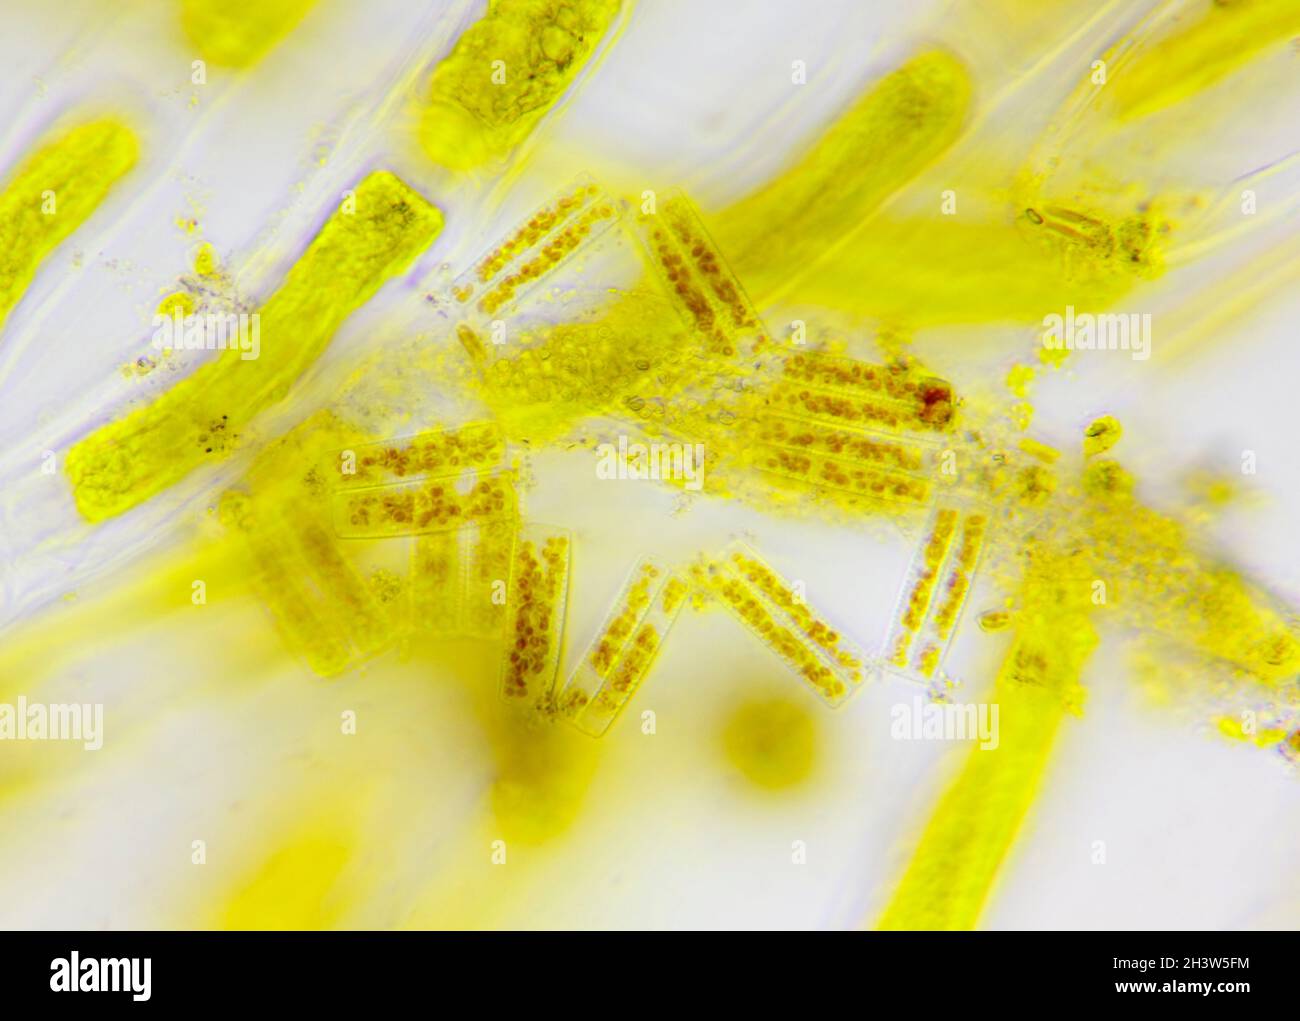 Vue microscopique d'un diatomé (Diatoma) entre les cellules d'algues.Éclairage à fond clair. Banque D'Images